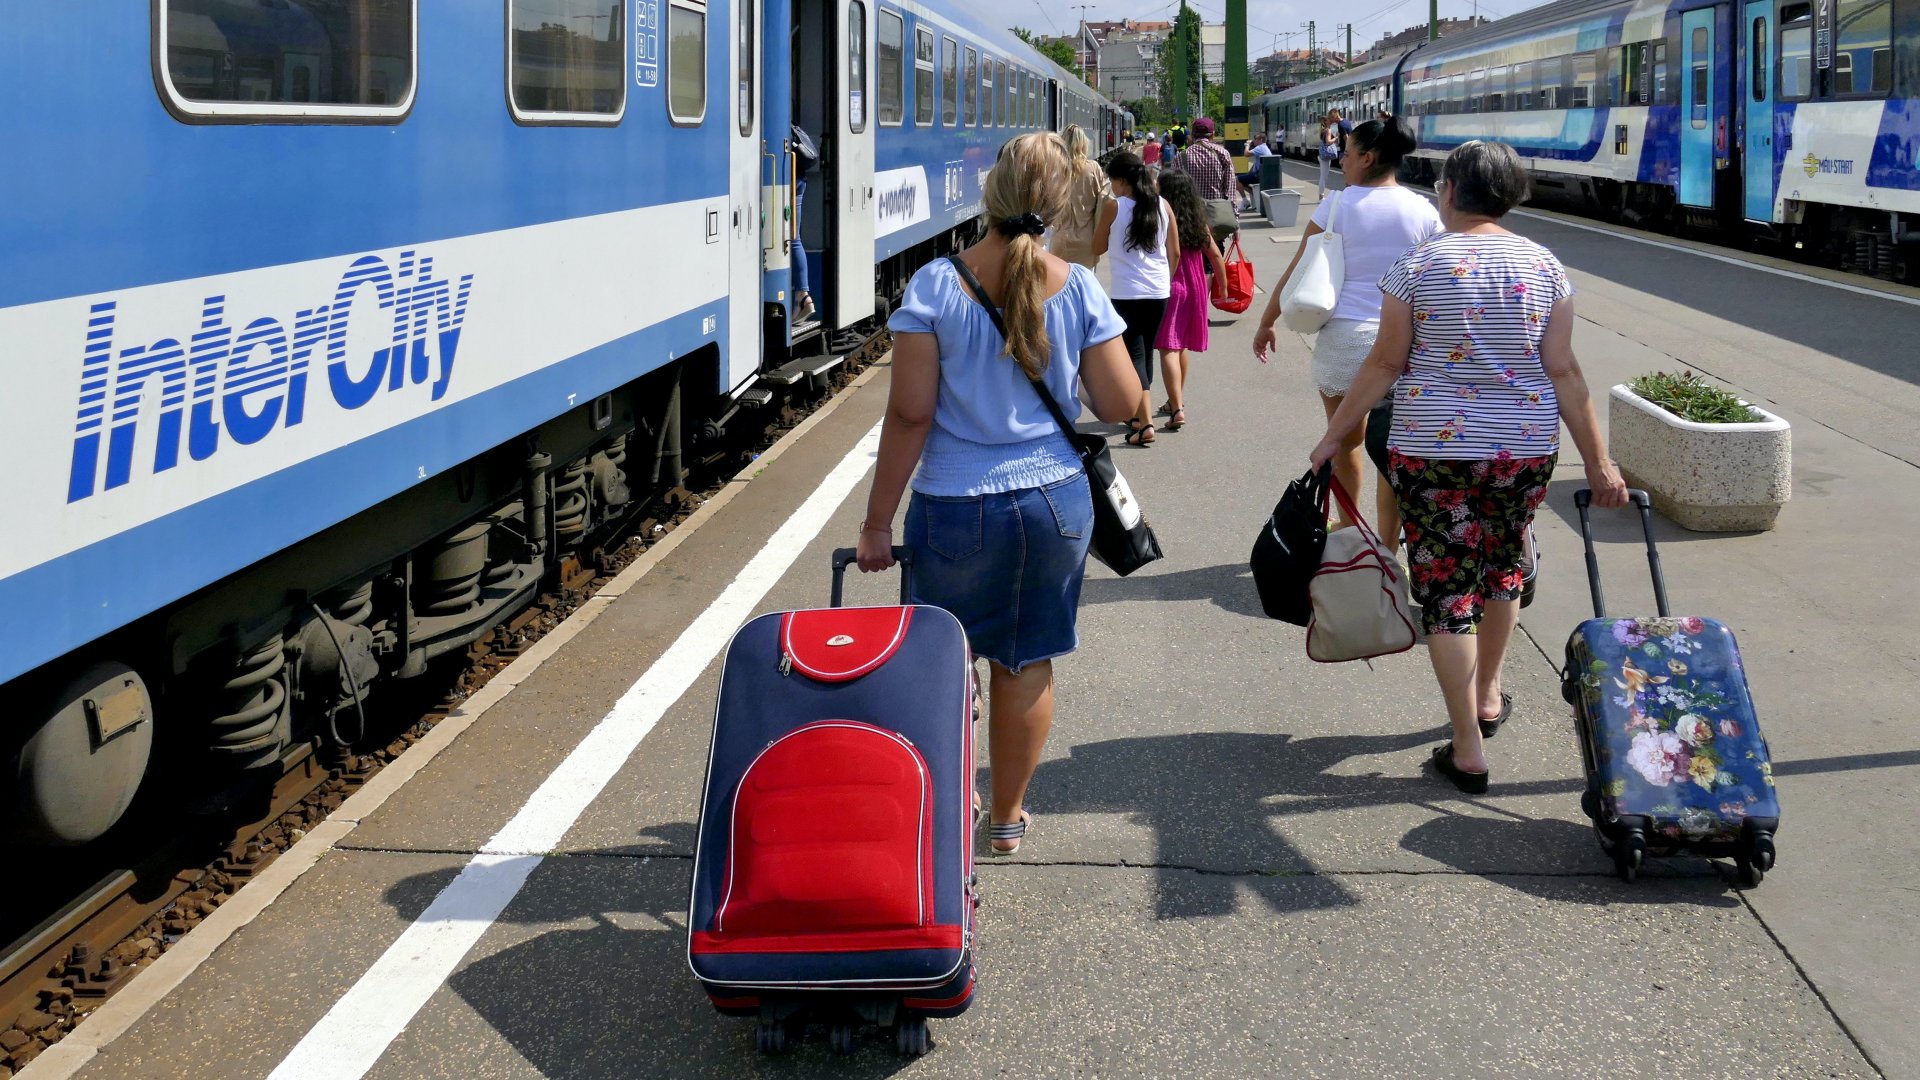 Utasok csomagokkal a fõváros Déli pályaudvarának peronján a MÁV Start Zrt. Keszthely felé induló egyik InterCity (IC-s) vonatának egyik számozott kocsija felé tartanak, ahova a megváltott helyjegyük szól